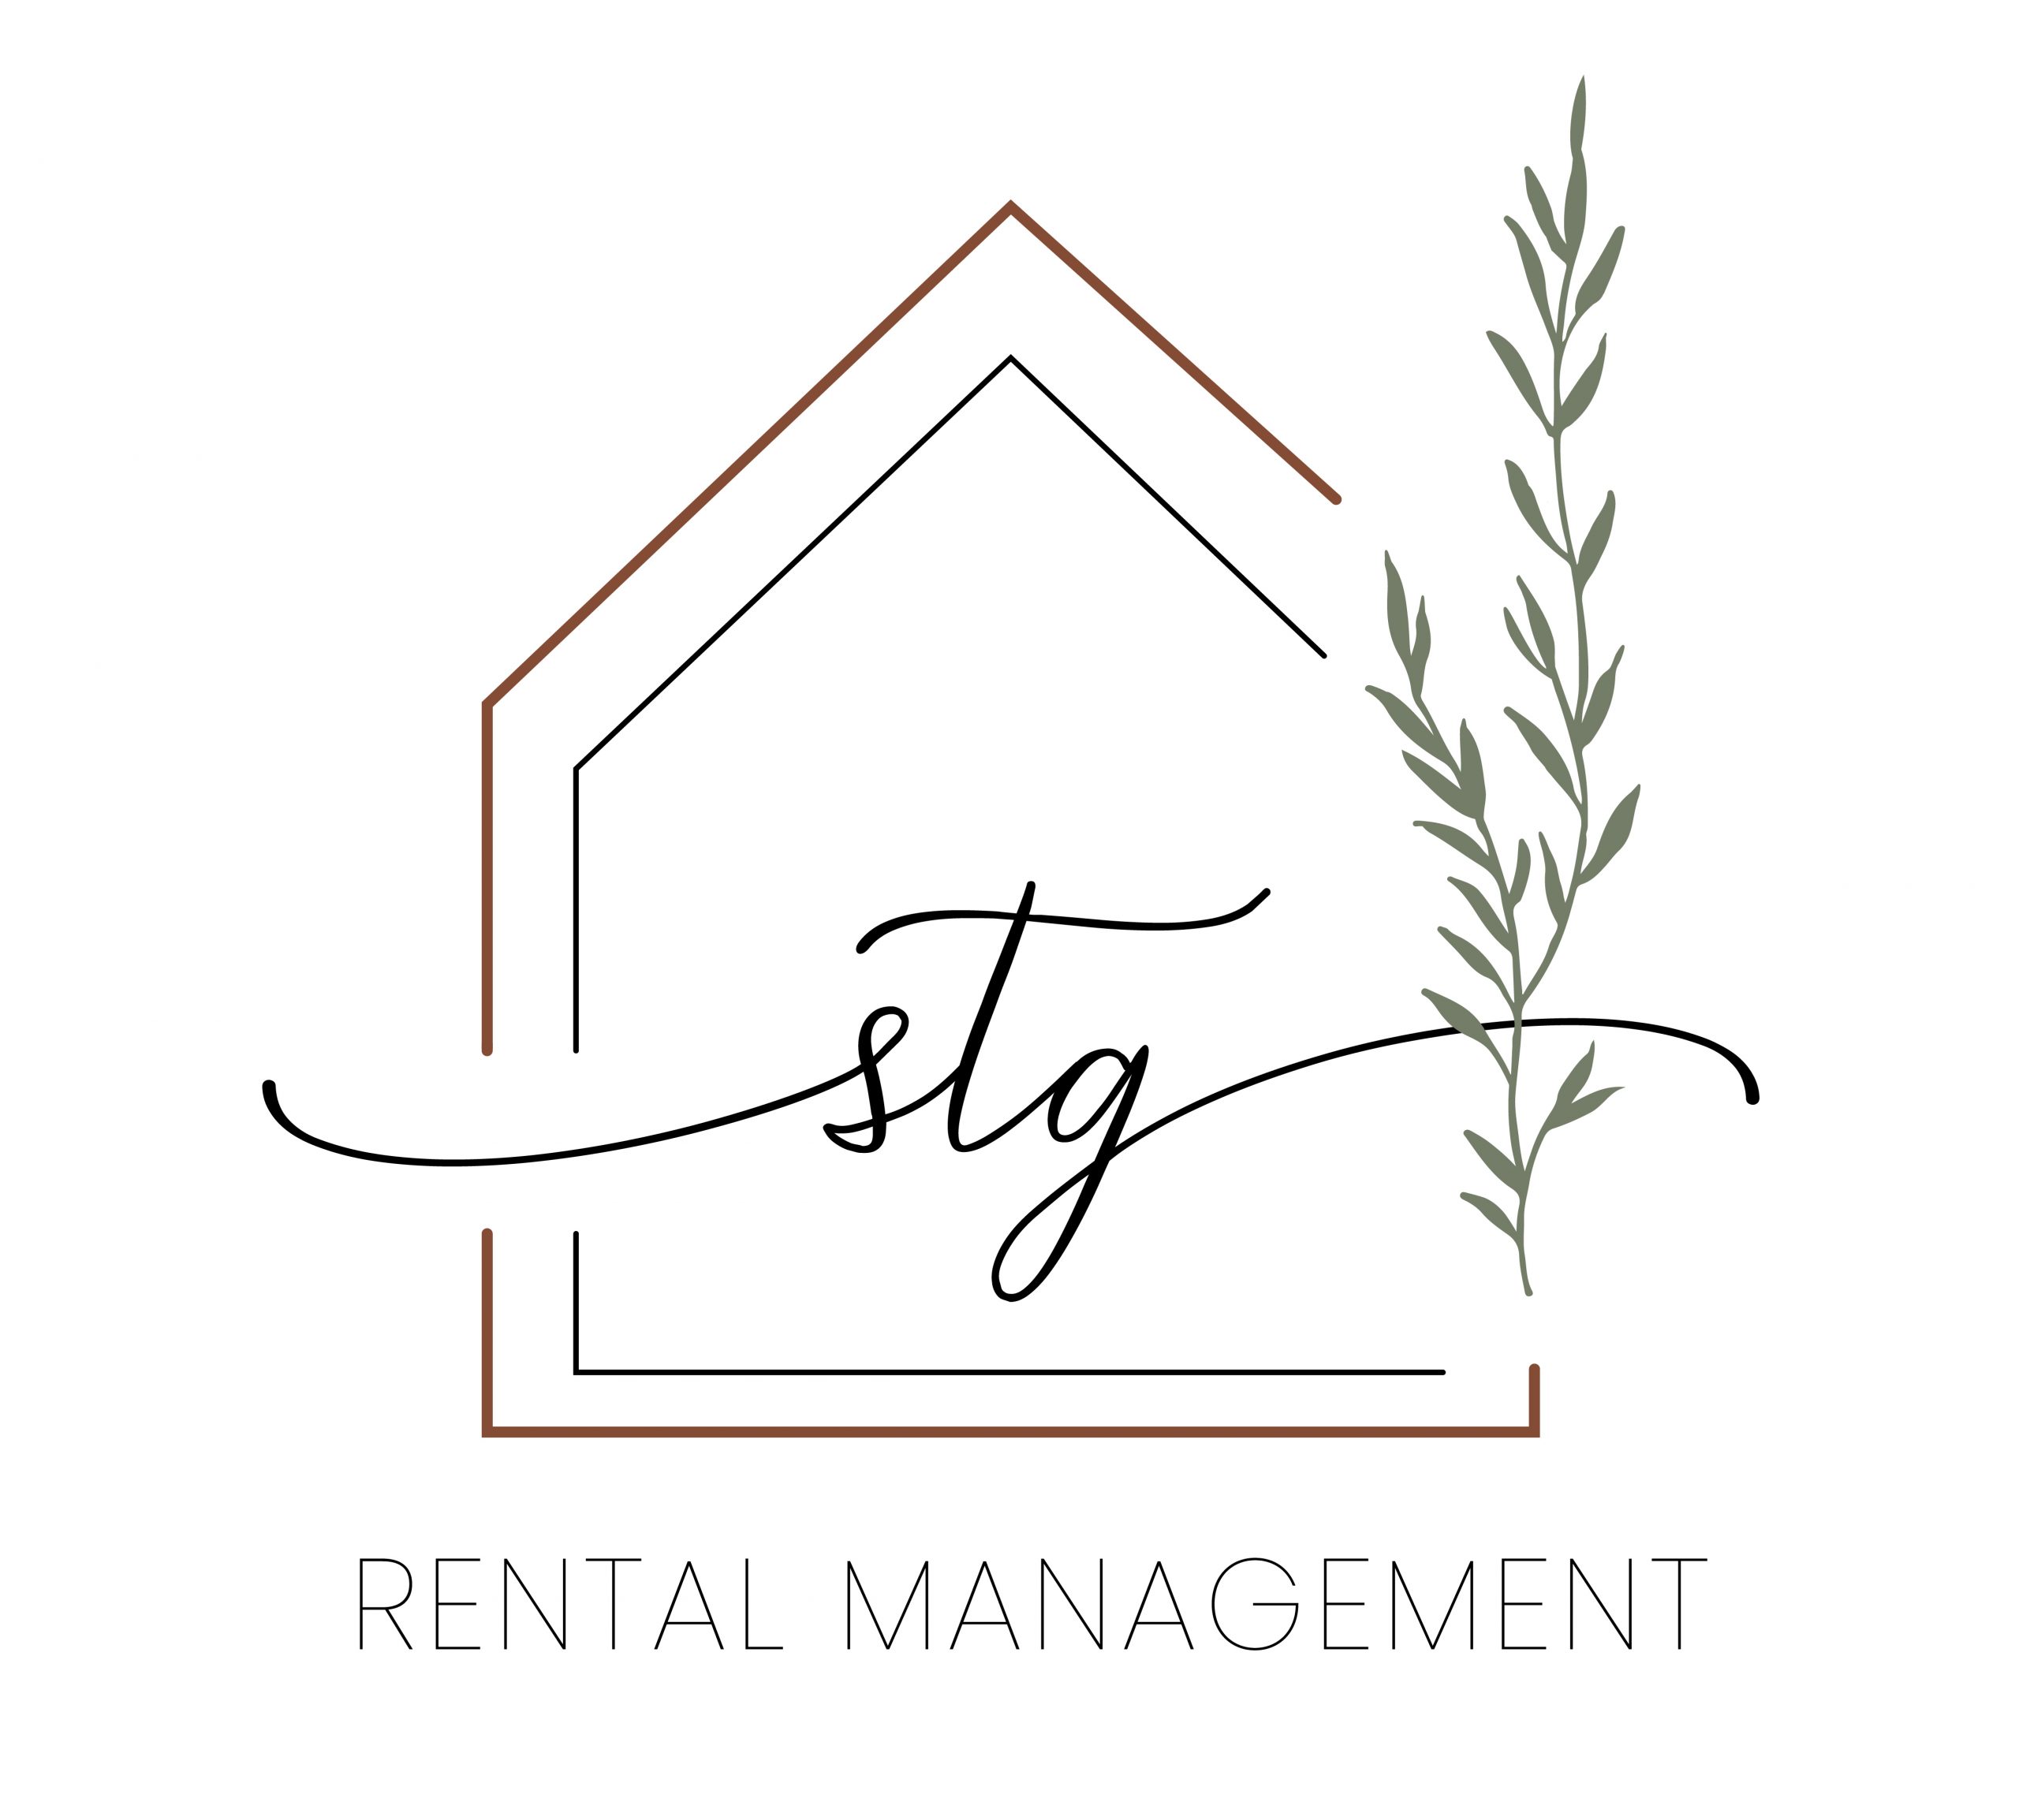 STG Rentals / Keller Williams Realty Property Management